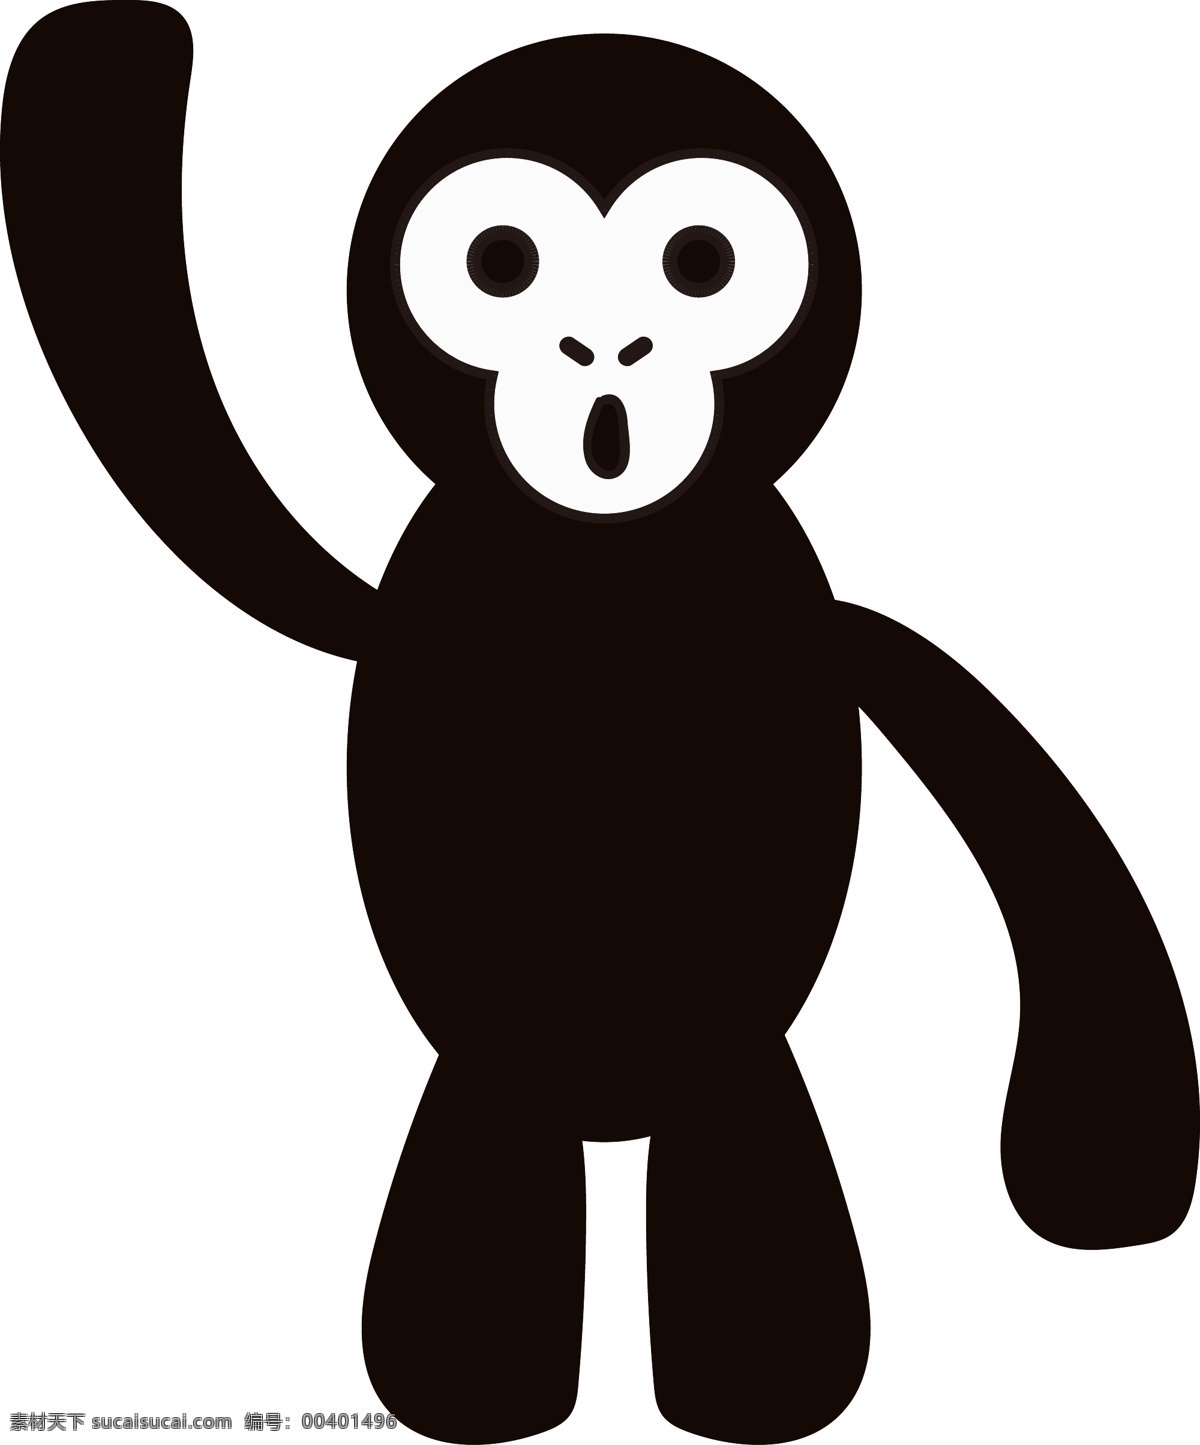 卡通 手绘 动物 黑白 猩猩 动物形态 时尚卡通动物 黑白猩猩 平面手绘 色彩丰富 可爱 动态惊讶表情